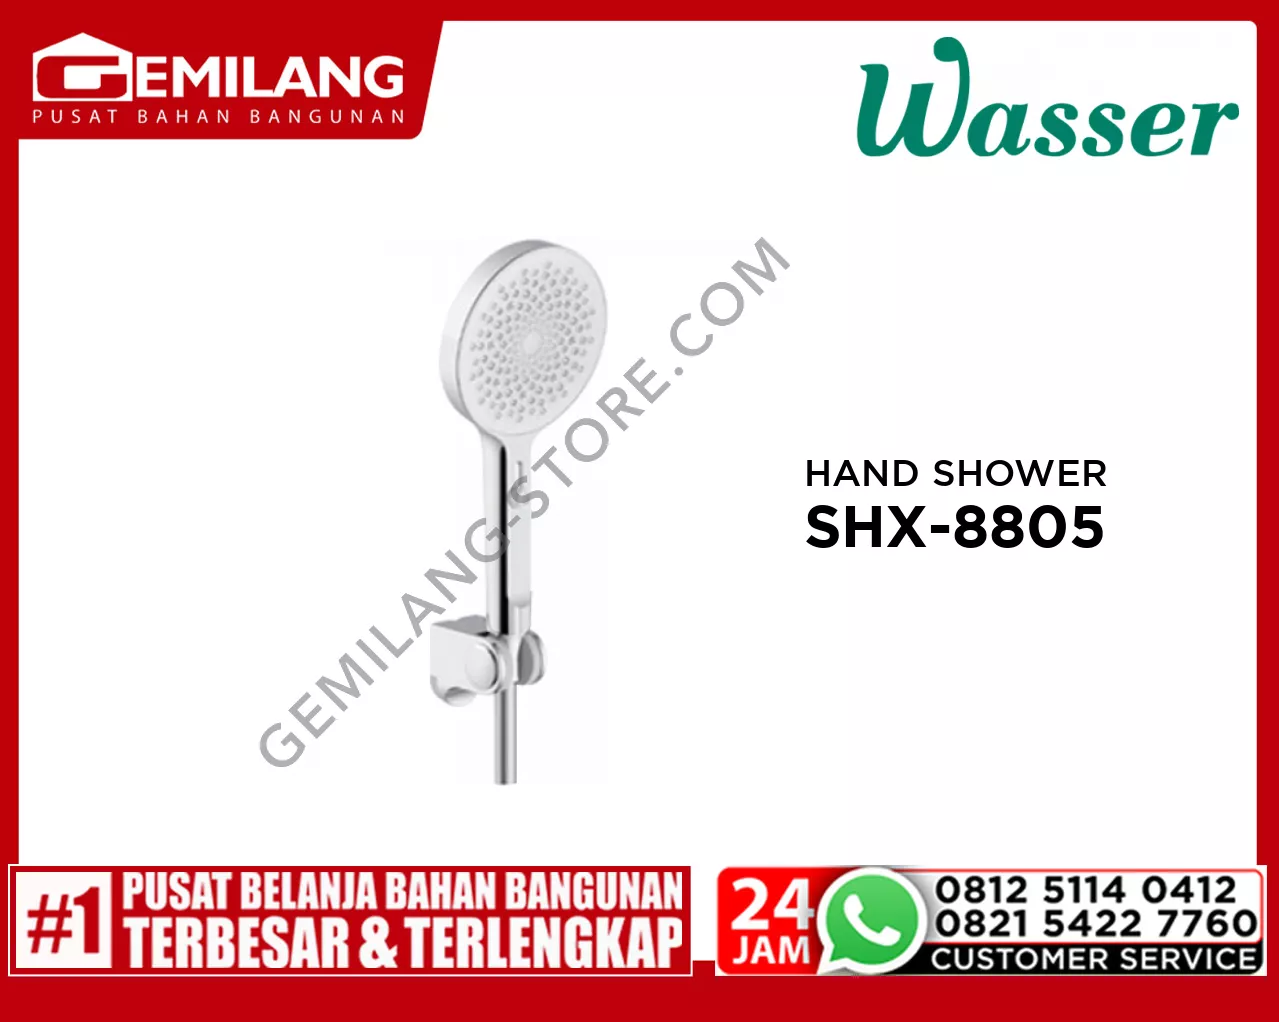 WASSER HAND SHOWER SHX-8805